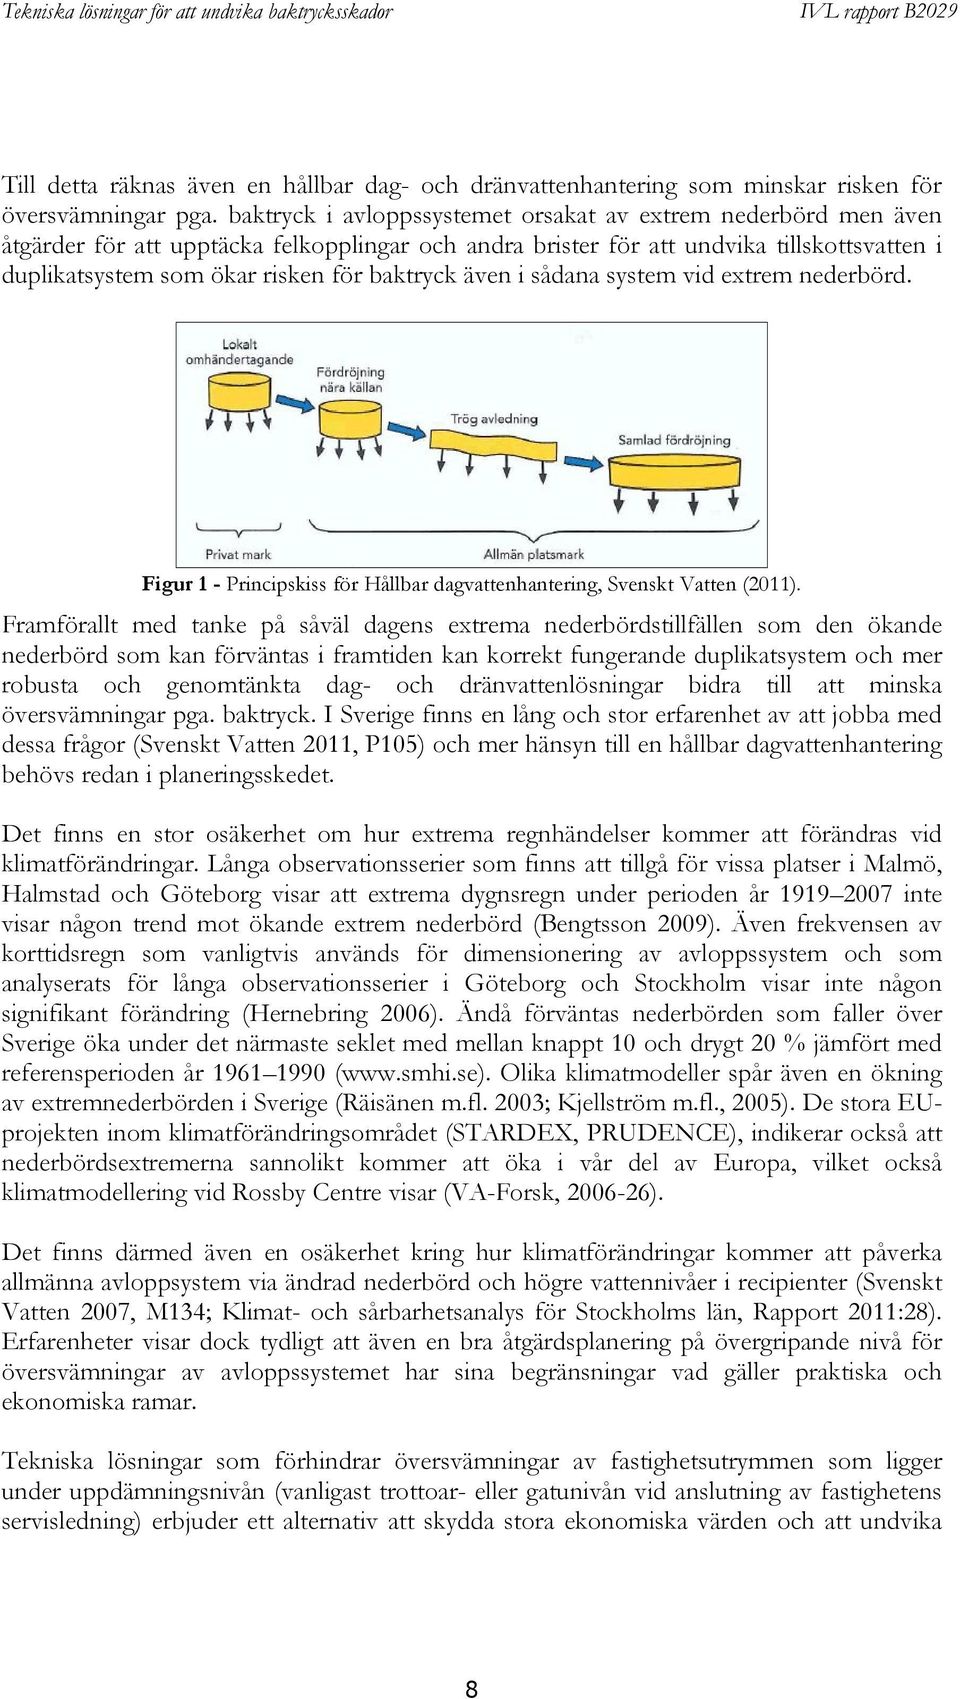 baktryck även i sådana system vid extrem nederbörd. Figur 1 - Principskiss för Hållbar dagvattenhantering, Svenskt Vatten (2011).